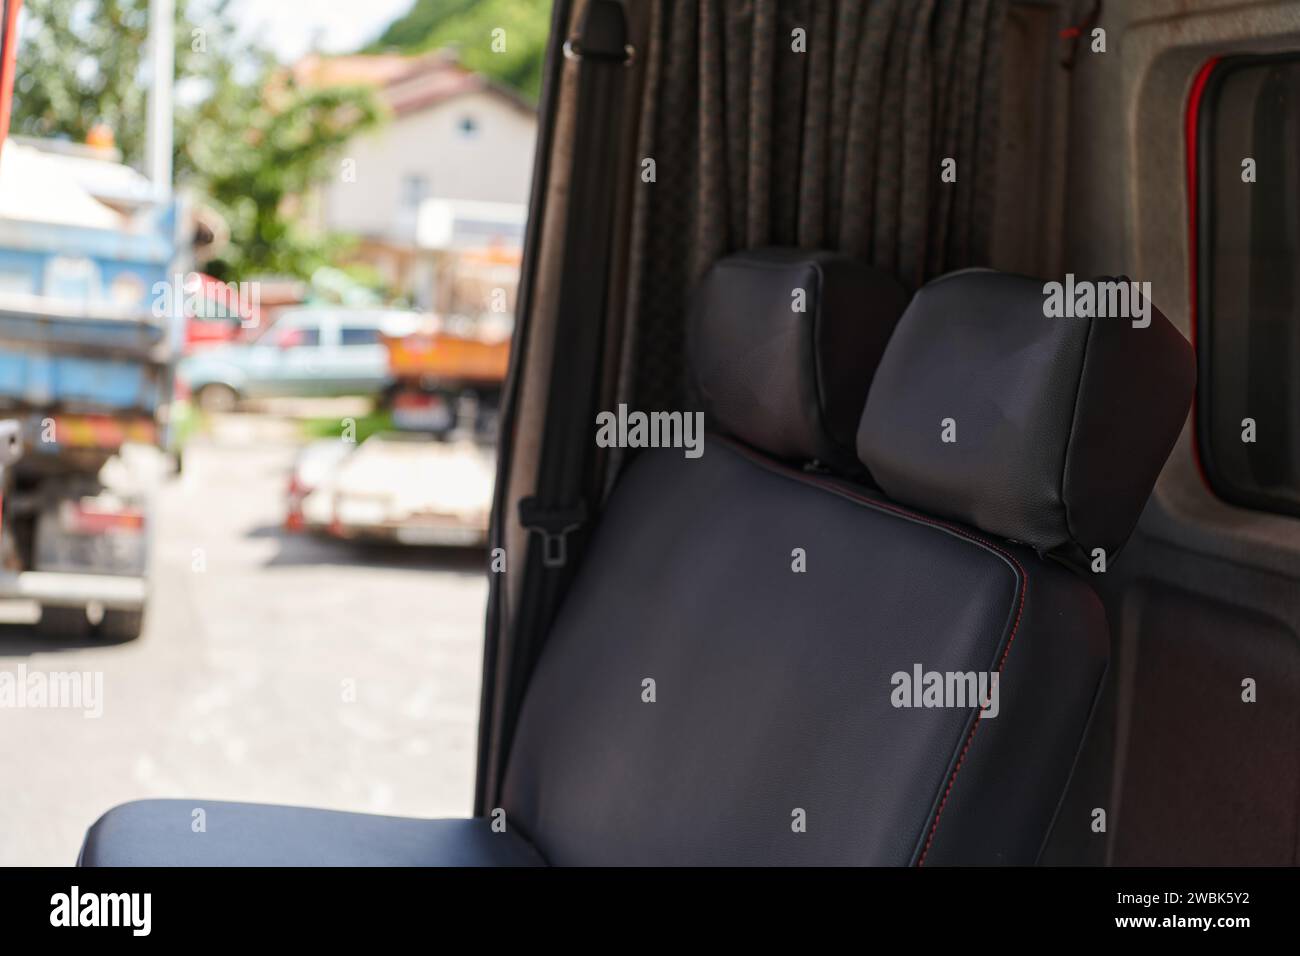 La cattura ravvicinata rivela i dettagli intricati dei sedili ergonomici e degli interni high-tech di un moderno camion antincendio, mostrando una perfetta Foto Stock